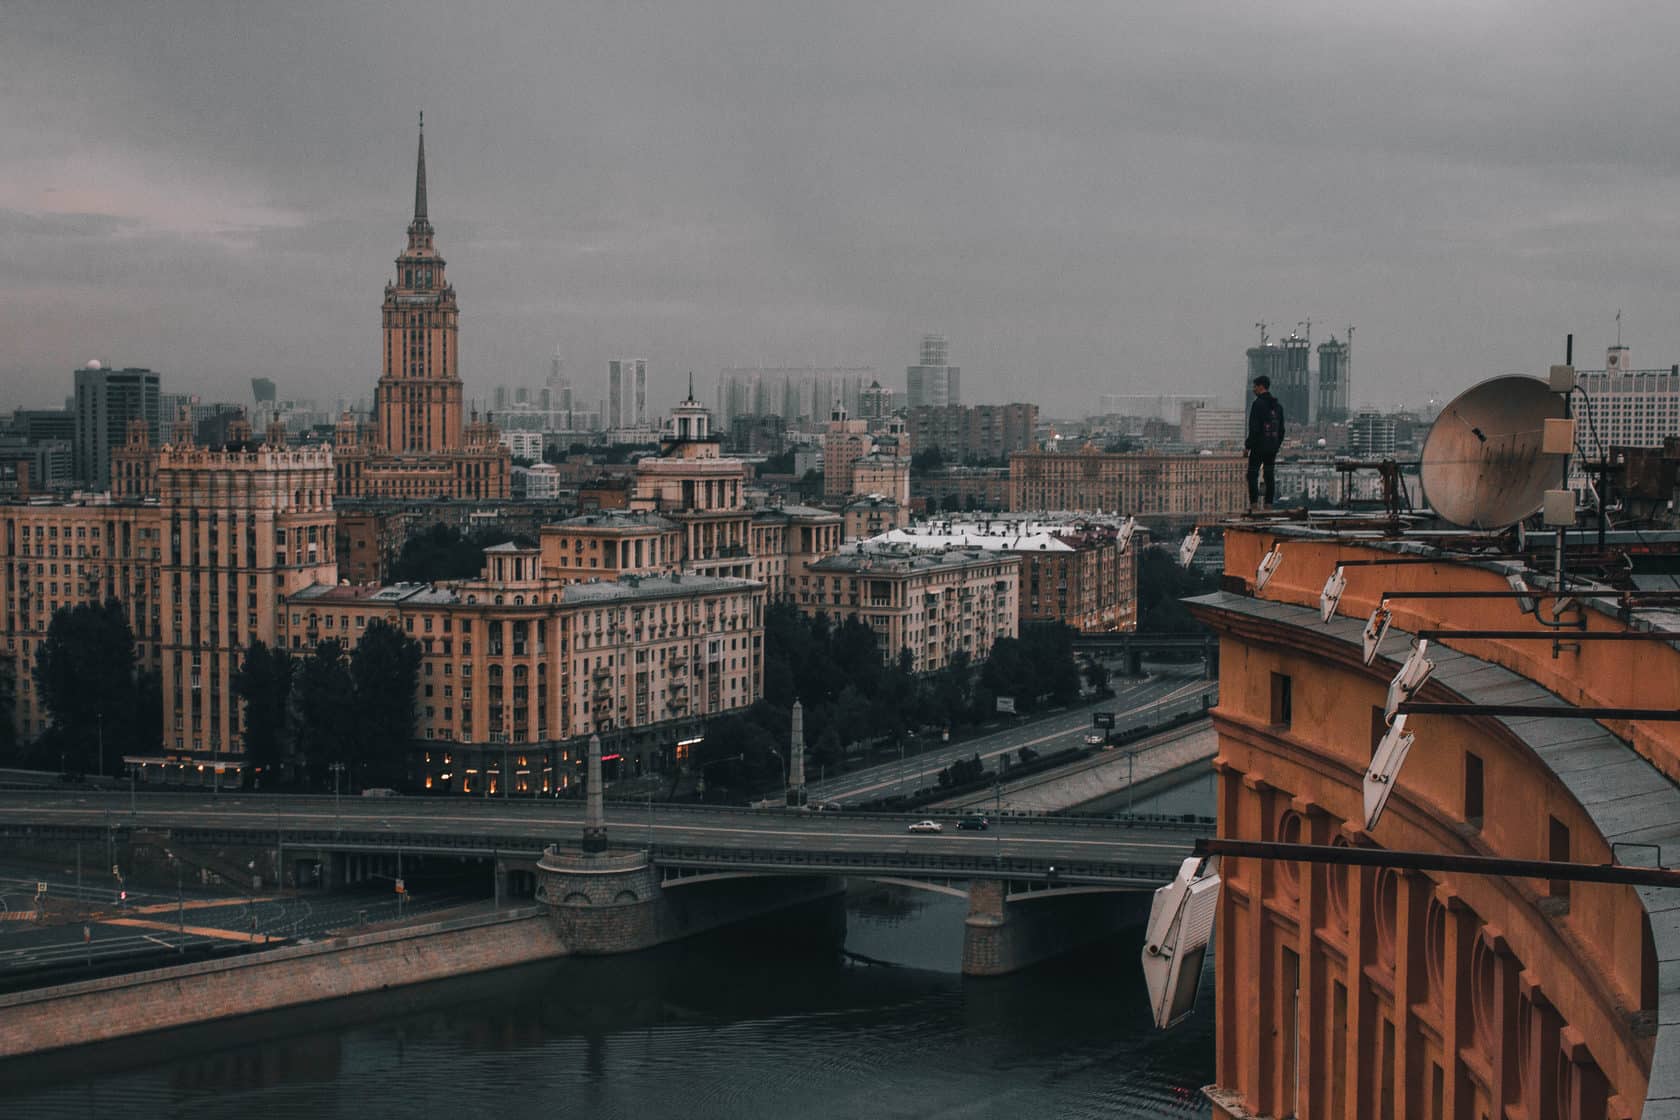 Экскурсия по крышам Москвы